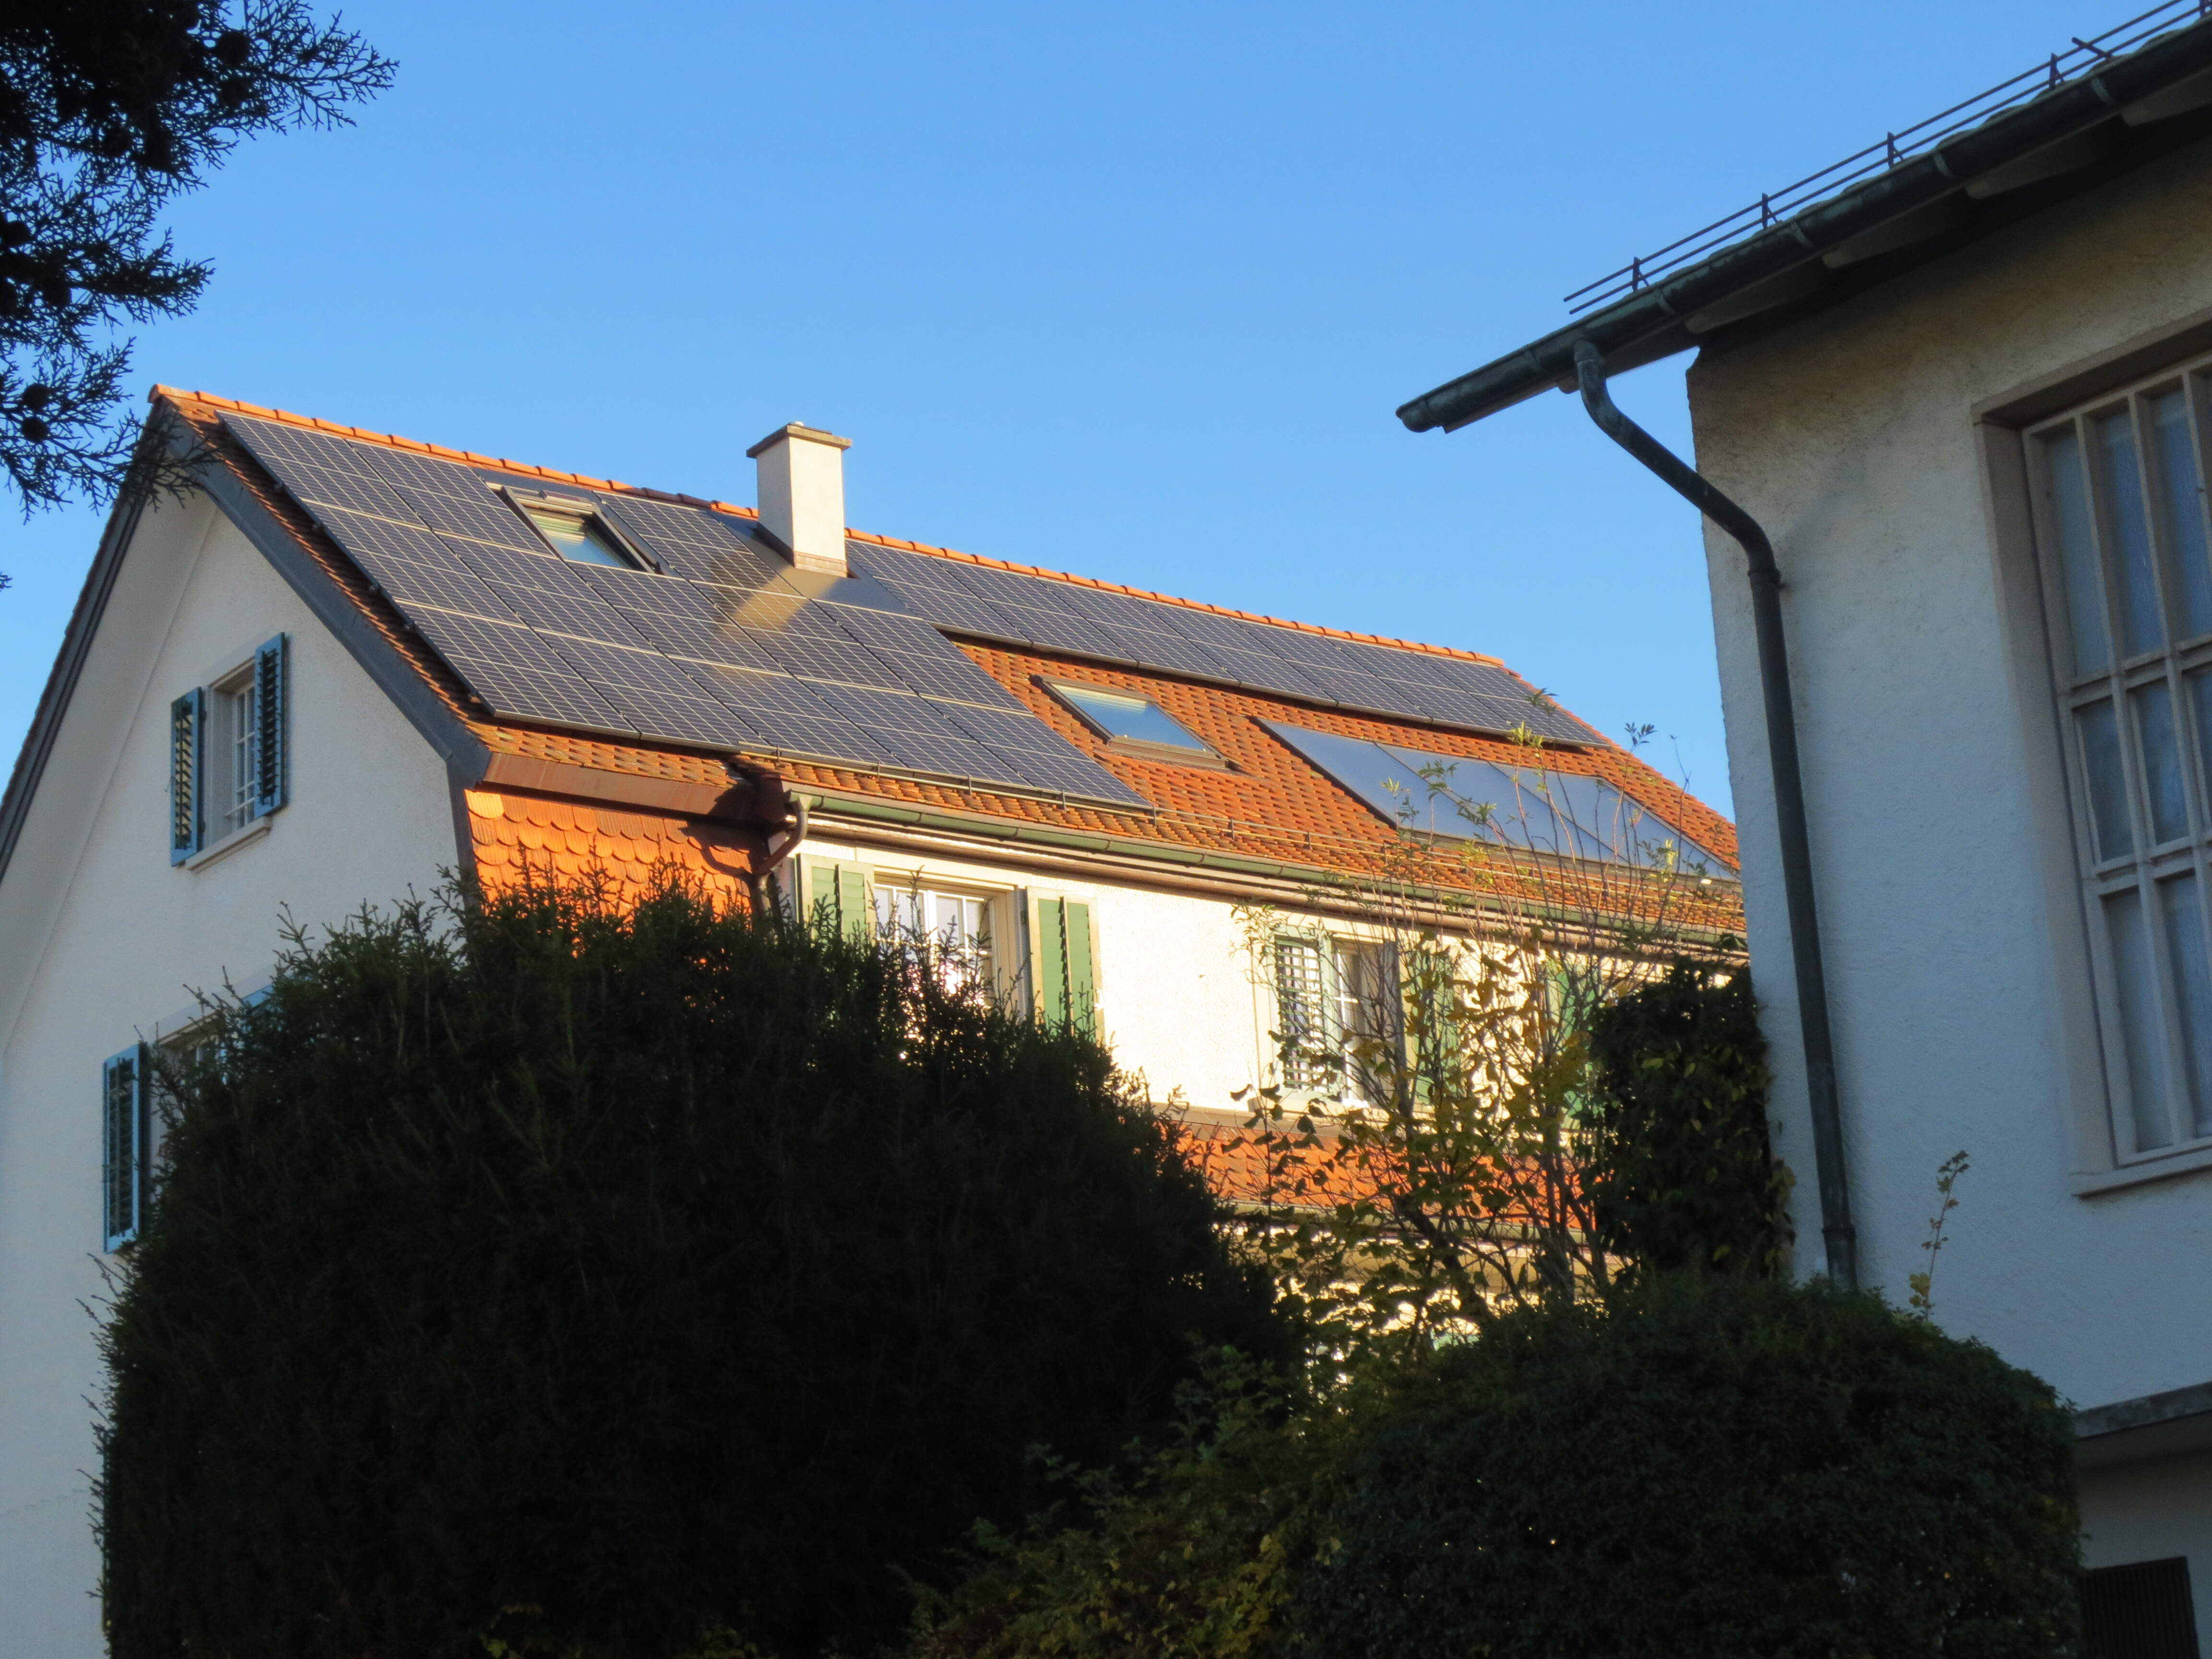 Ansicht Westdach mit Solarmodulen mit Blindmodulen belegt. (Fotoaufnahme um 15:30 Uhr)